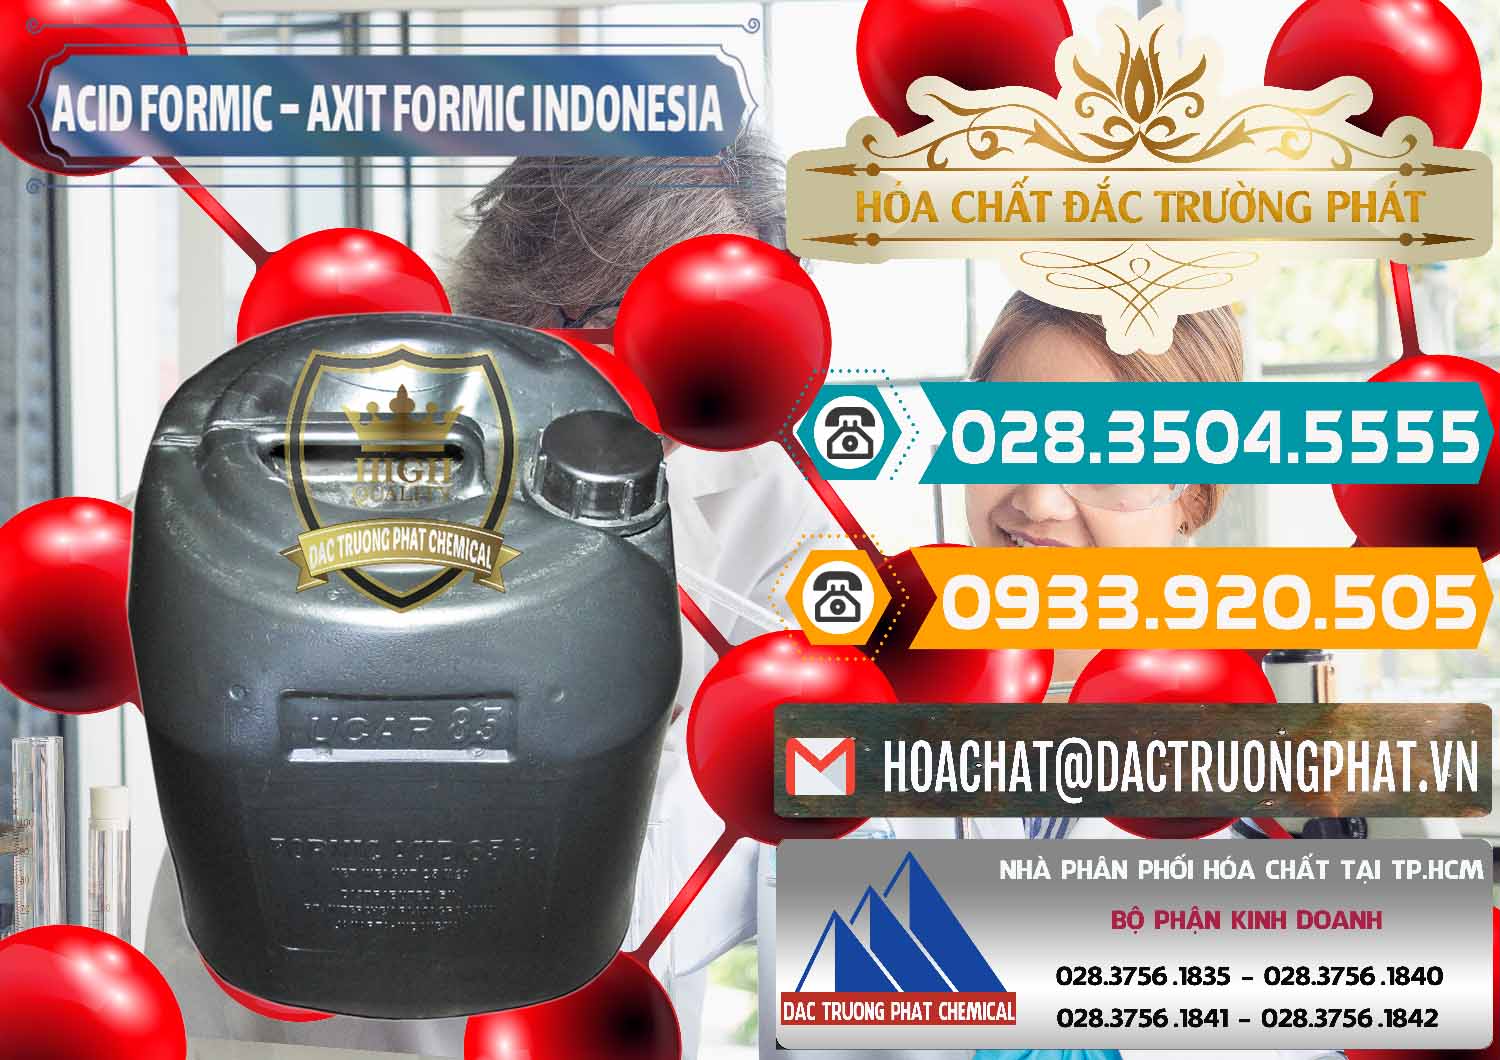 Nơi chuyên cung ứng và bán Acid Formic - Axit Formic Indonesia - 0026 - Cty kinh doanh - cung cấp hóa chất tại TP.HCM - congtyhoachat.vn